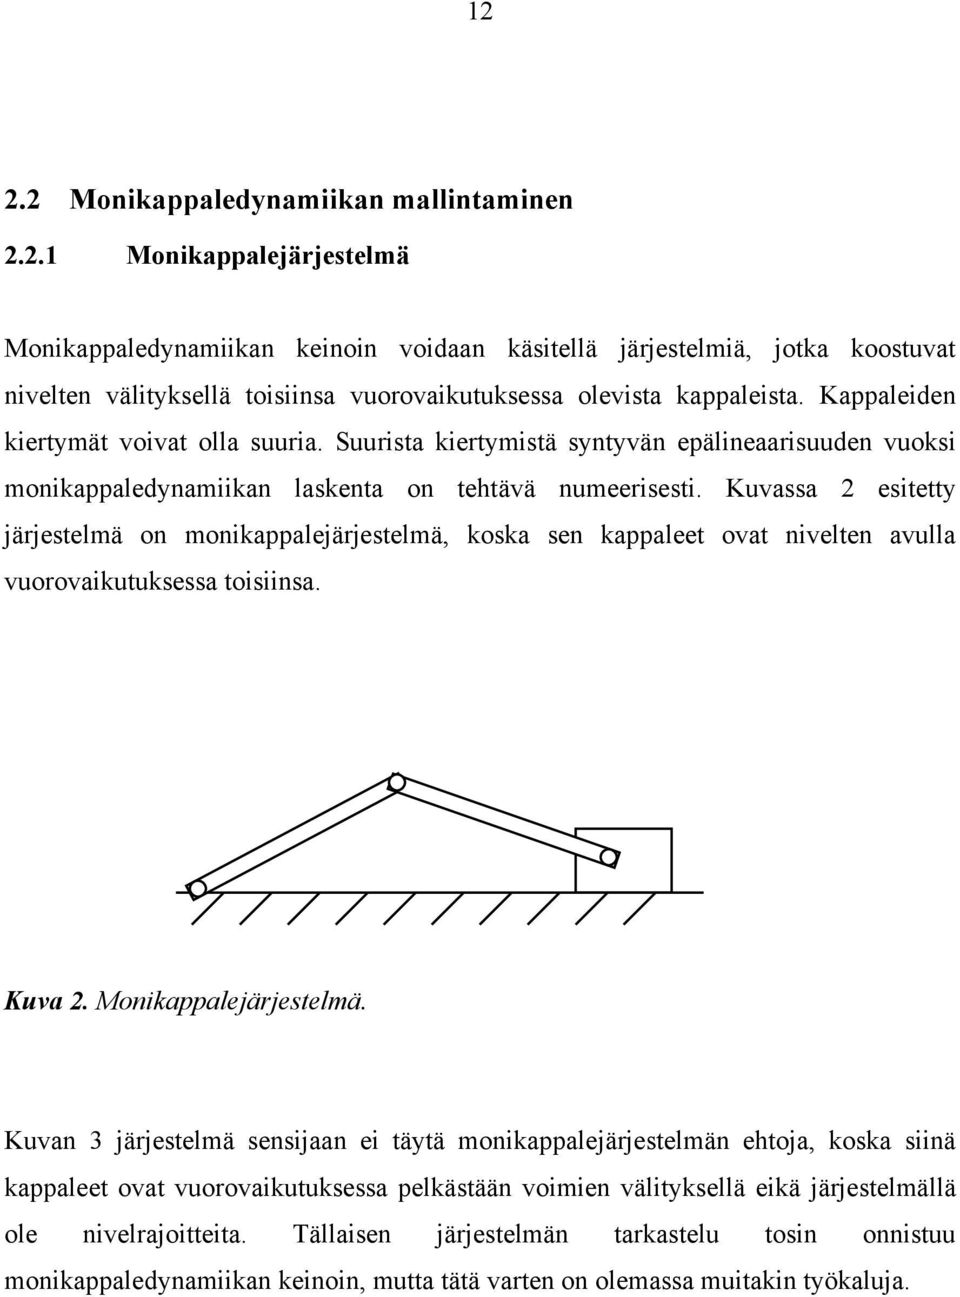 Kuvassa 2 estetty järjestelmä on monkappalejärjestelmä, koska sen kappaleet ovat nvelten avulla vuorovakutuksessa tosnsa. Kuva 2. Monkappalejärjestelmä.